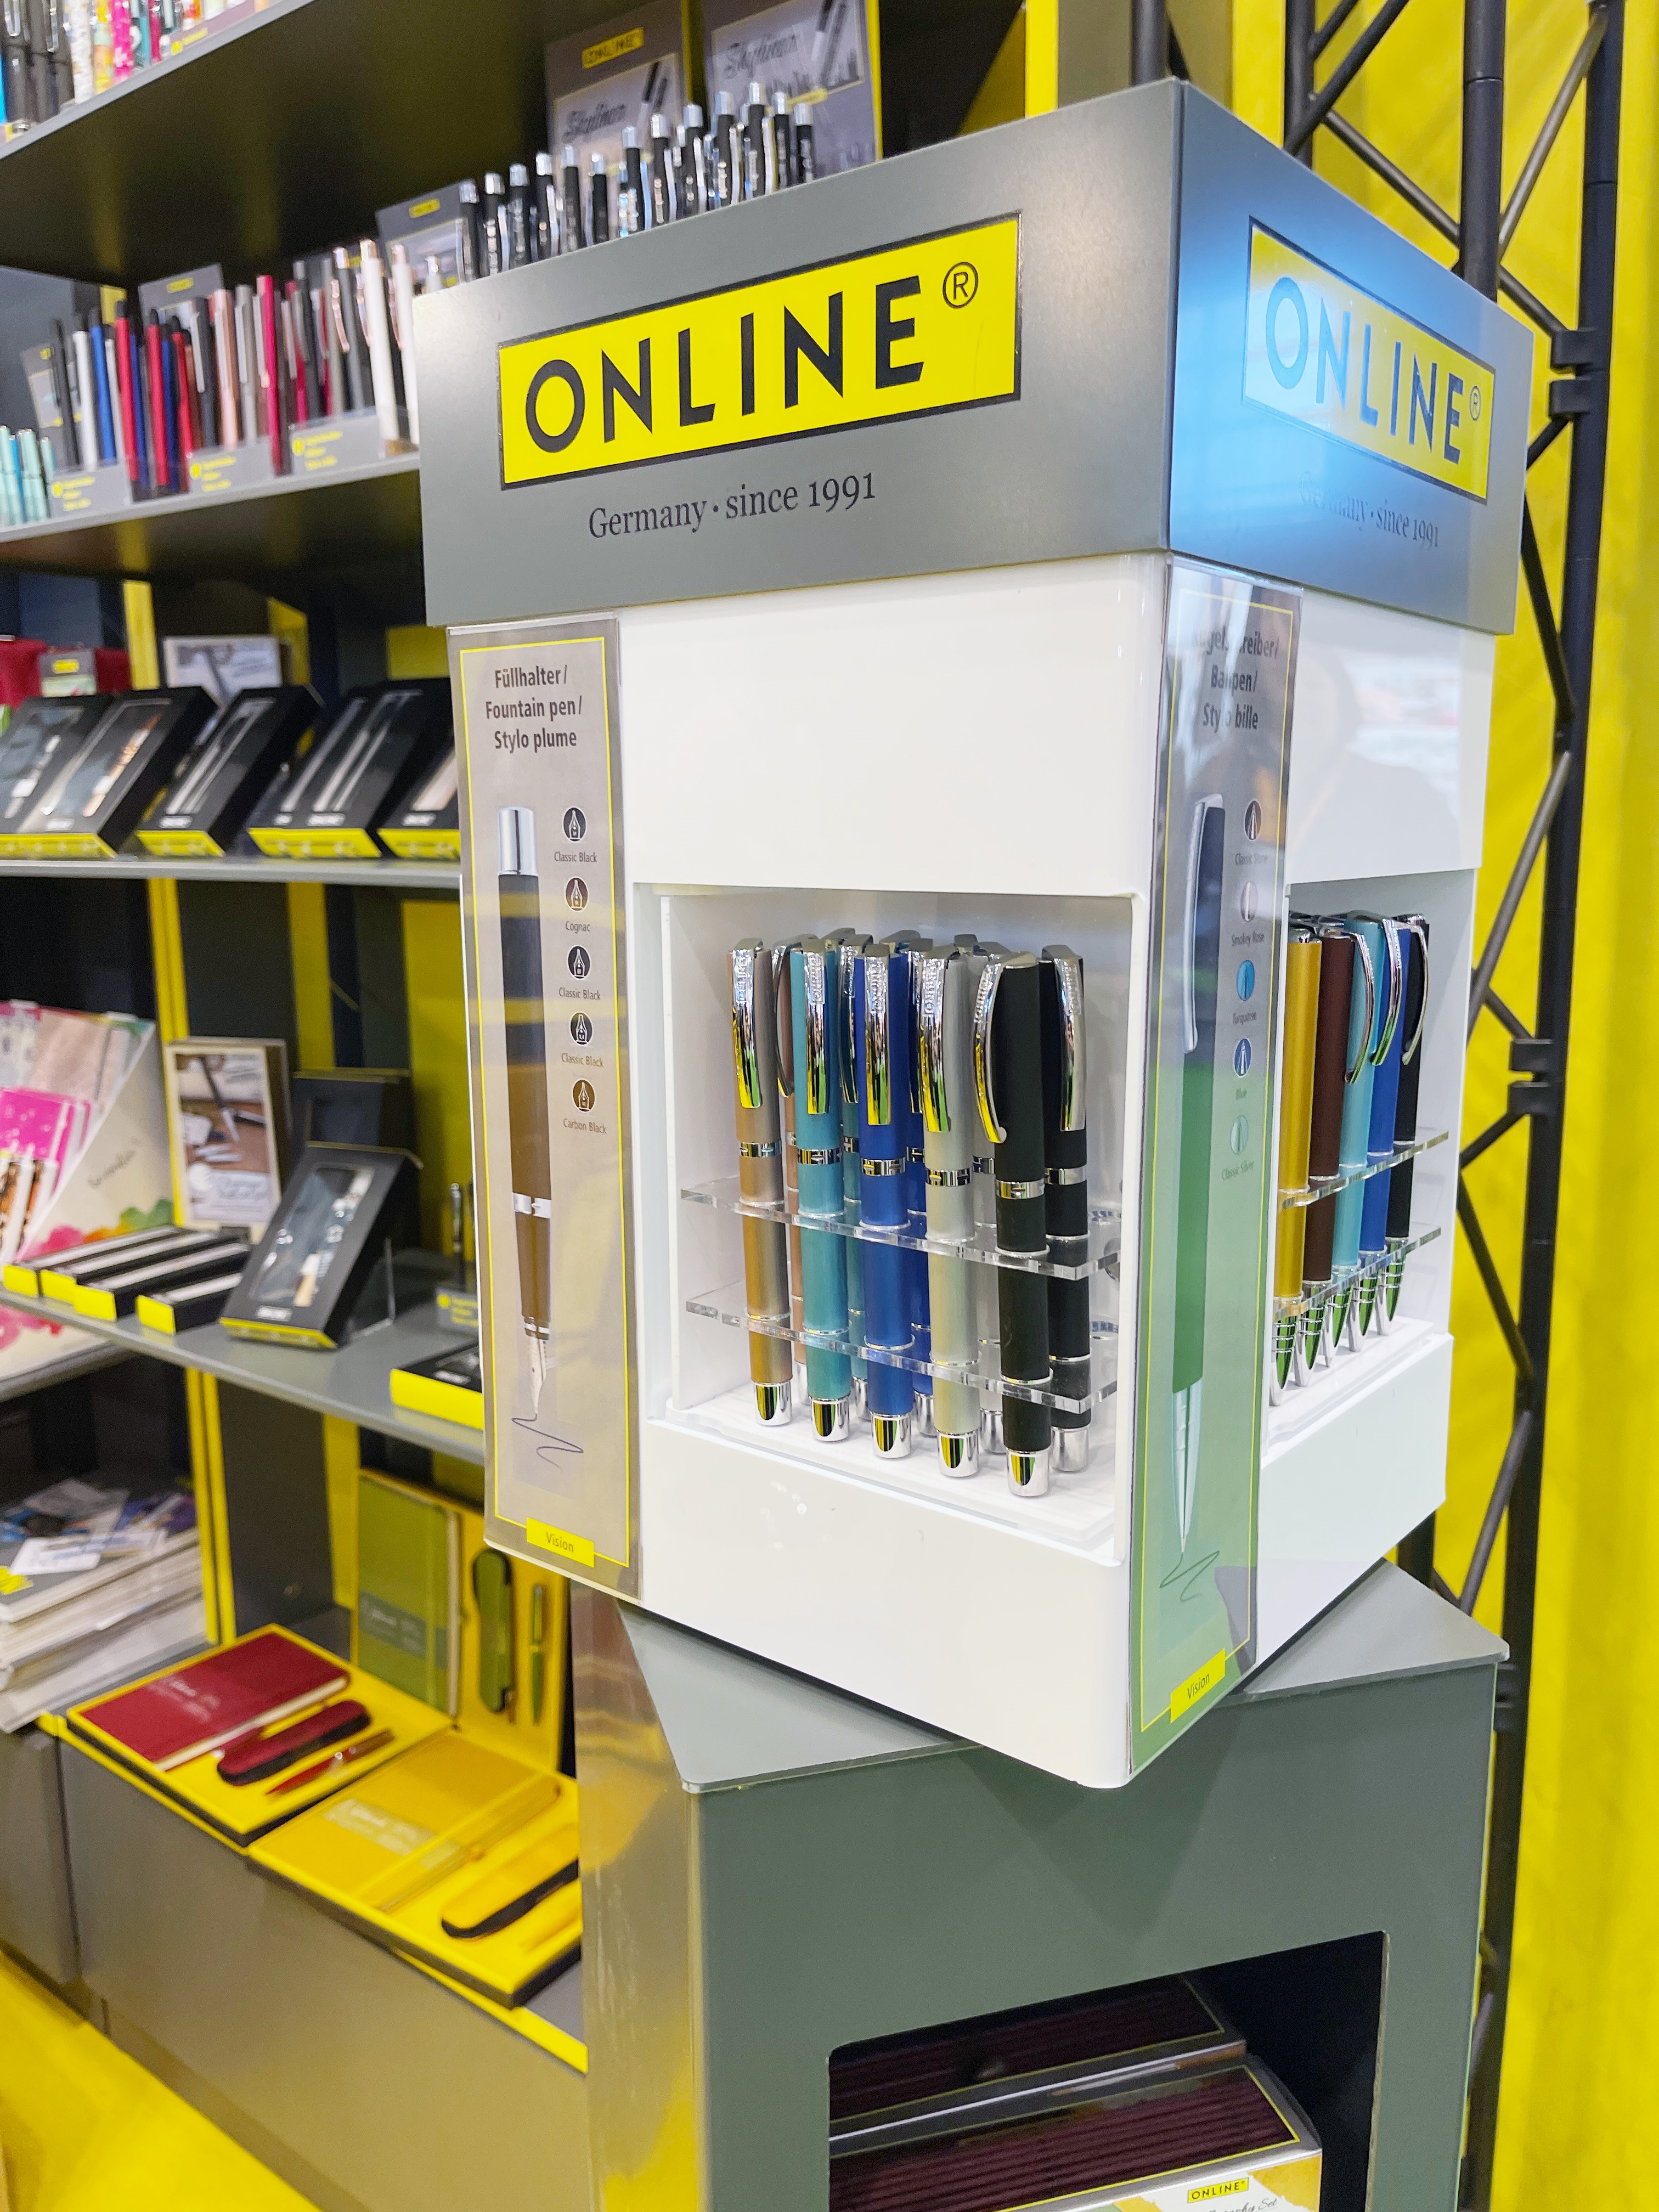 Online Schreibgeräte zeigte sowohl klassischen Schulbedarf als auch Schreibgeräte und Papiere für DIY-Projekte. Foto: Messe Frankfurt/Sandra Kress